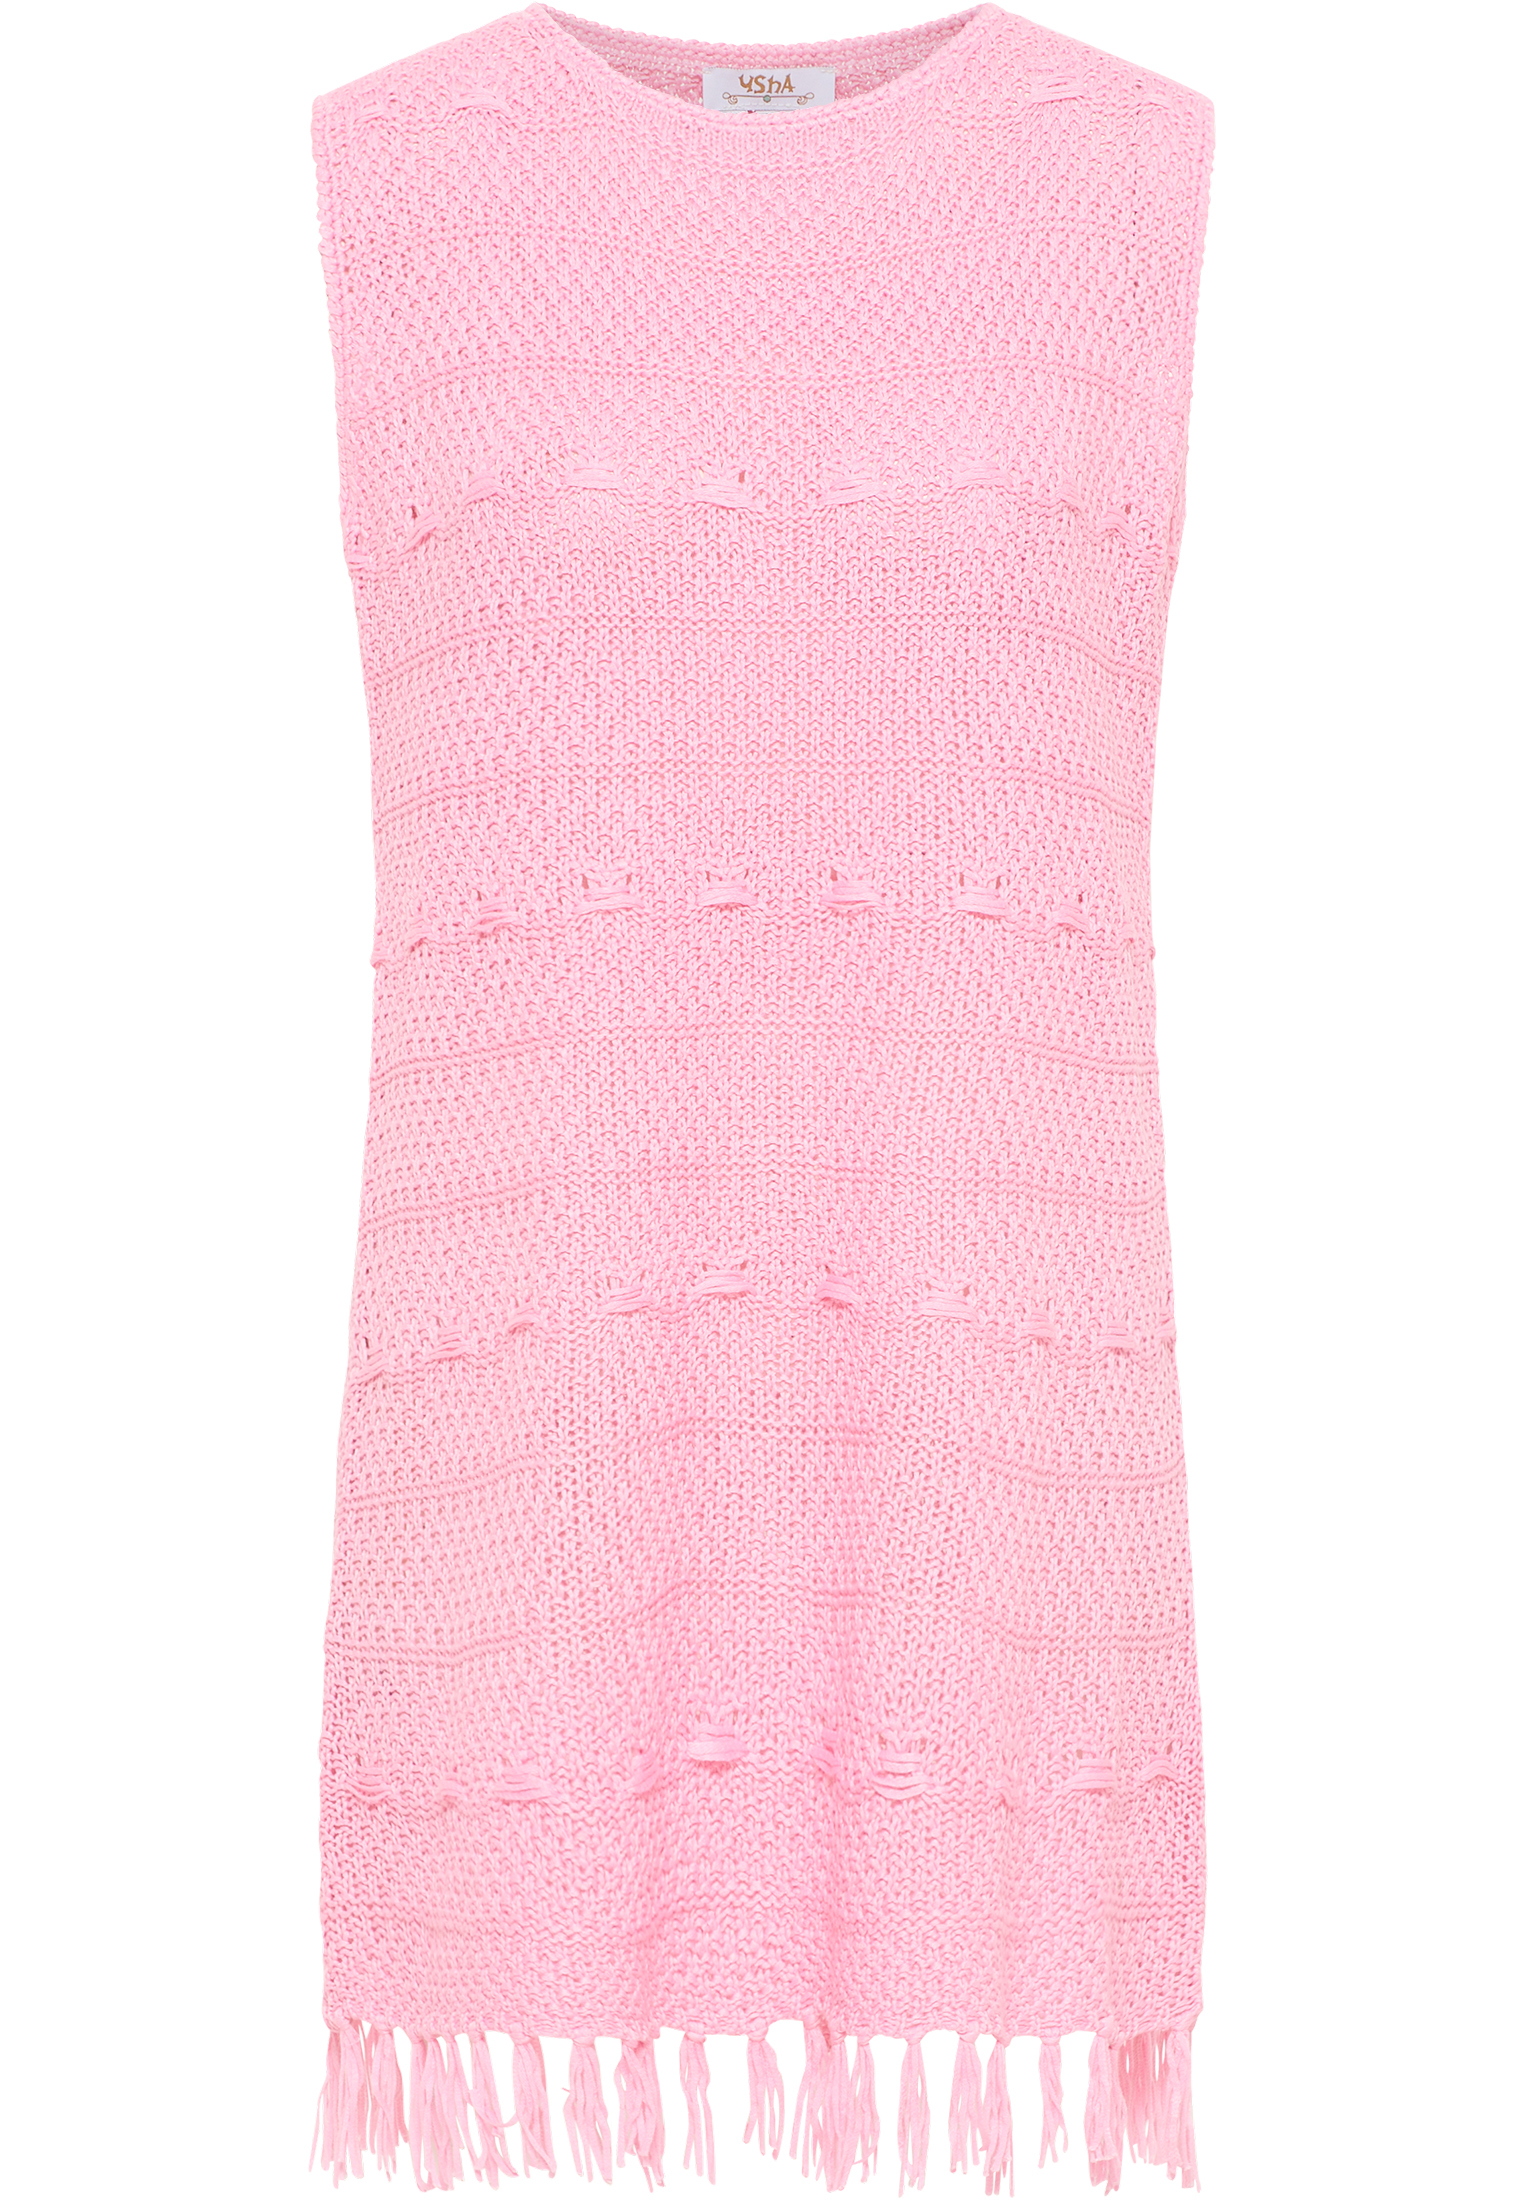 Платье usha FESTIVAL Strick, розовый